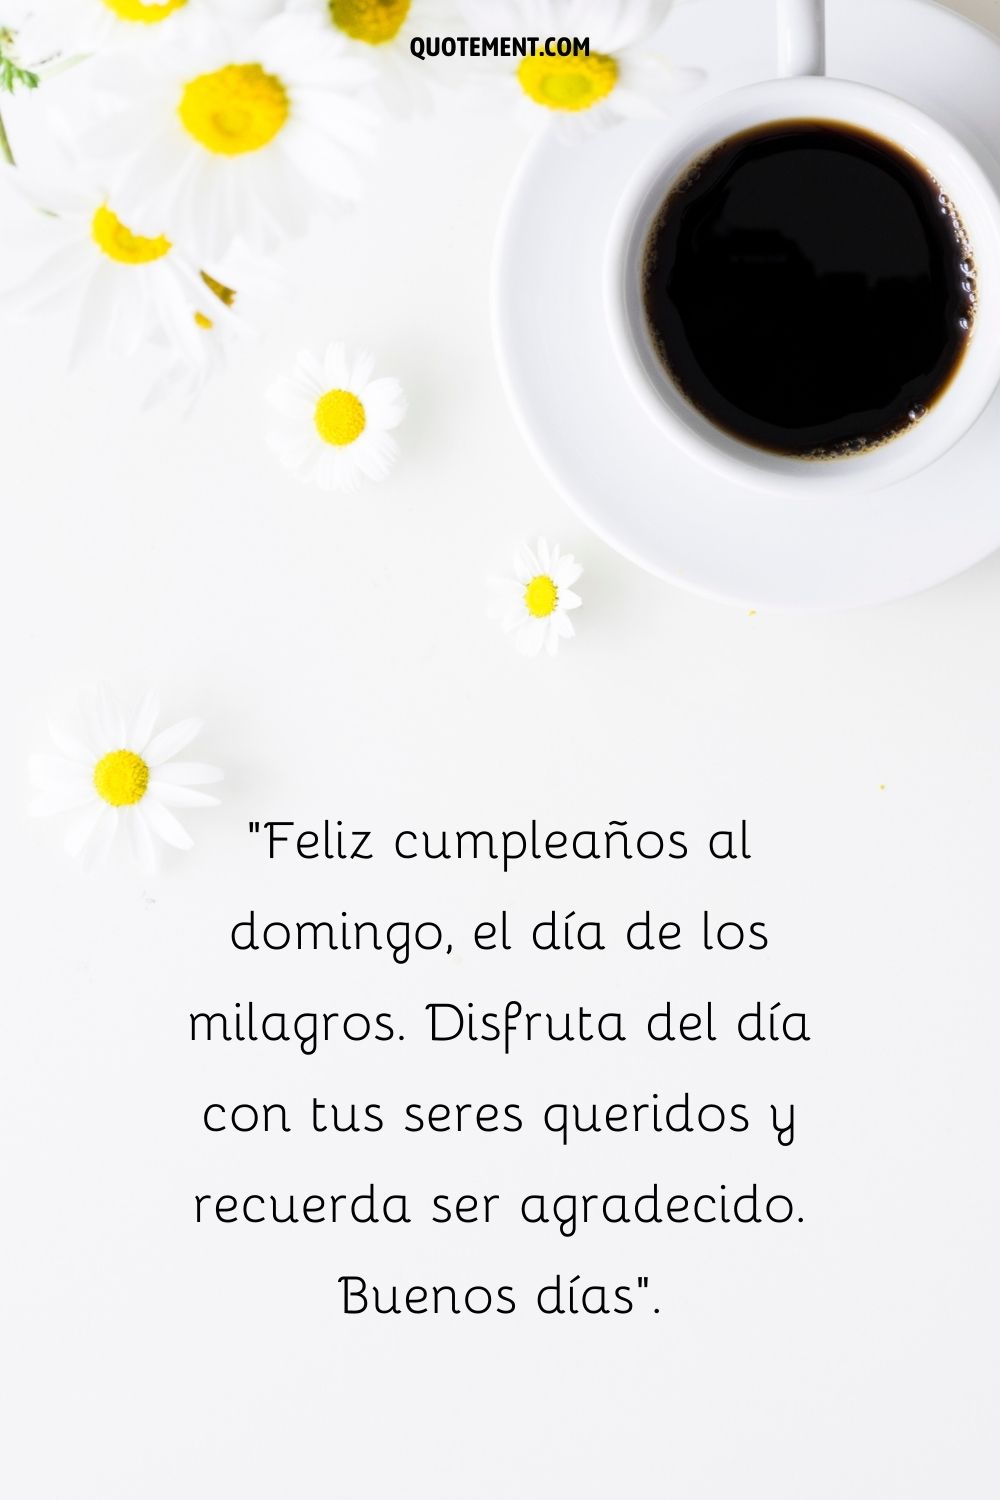 cafe oscuro y flores blancas sobre la mesa representando el saludo de buenos dias del domingo